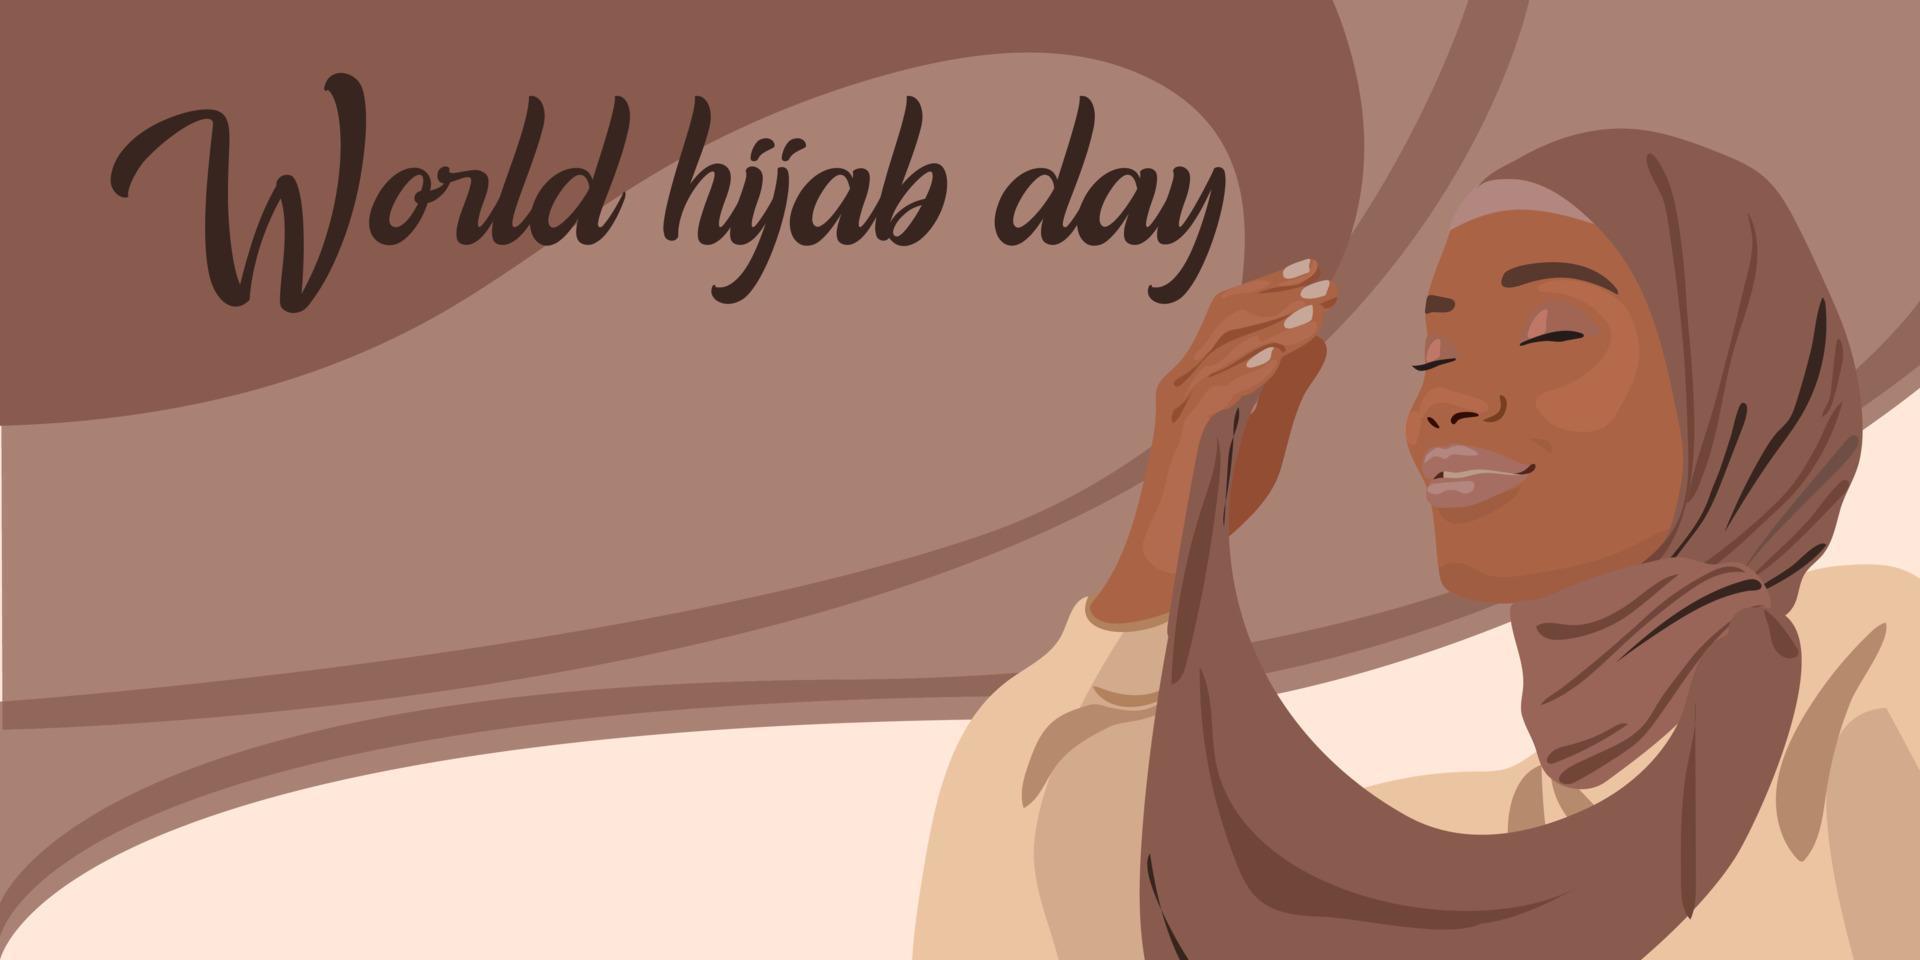 värld hijab dag. en muslim kvinna i en hijab. arab kvinna. 1 februari. Lycklig värld kvinnors dag i hijab. vektor illustration av en flicka i en huvudduk. de baner